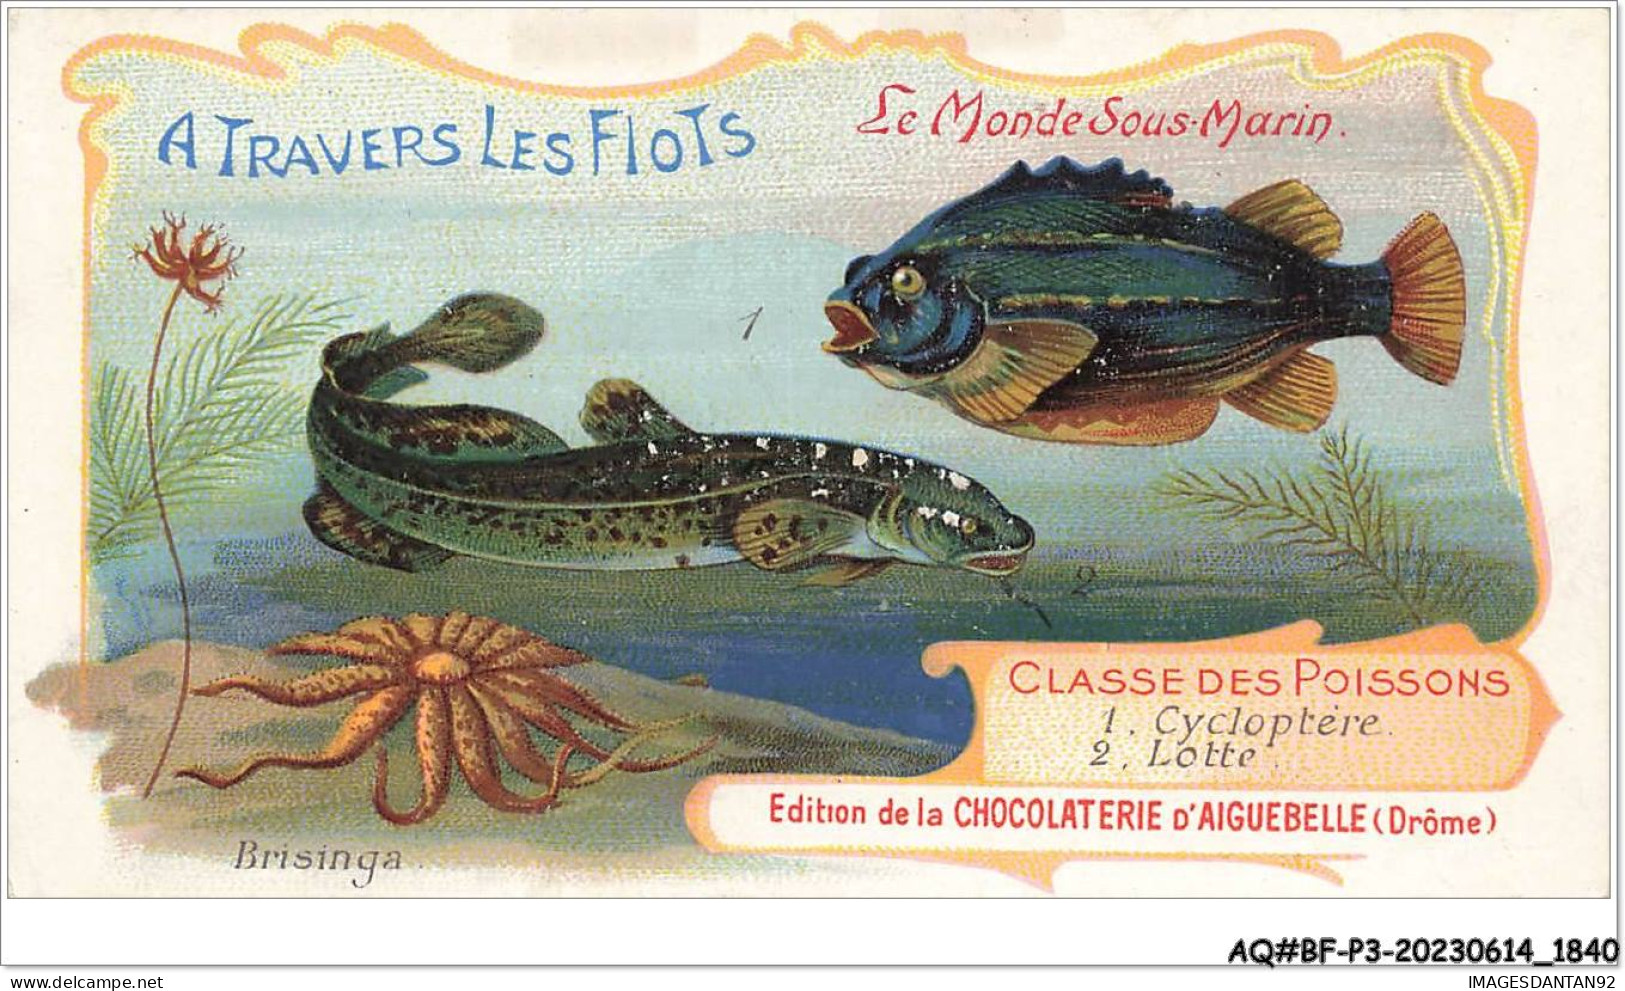 AQ#BFP3-CHROMOS-0918 - CHOCOLAT D'AIGUEBELLE - Le Monde Sous Marin - Classe Des Poissons   - Aiguebelle